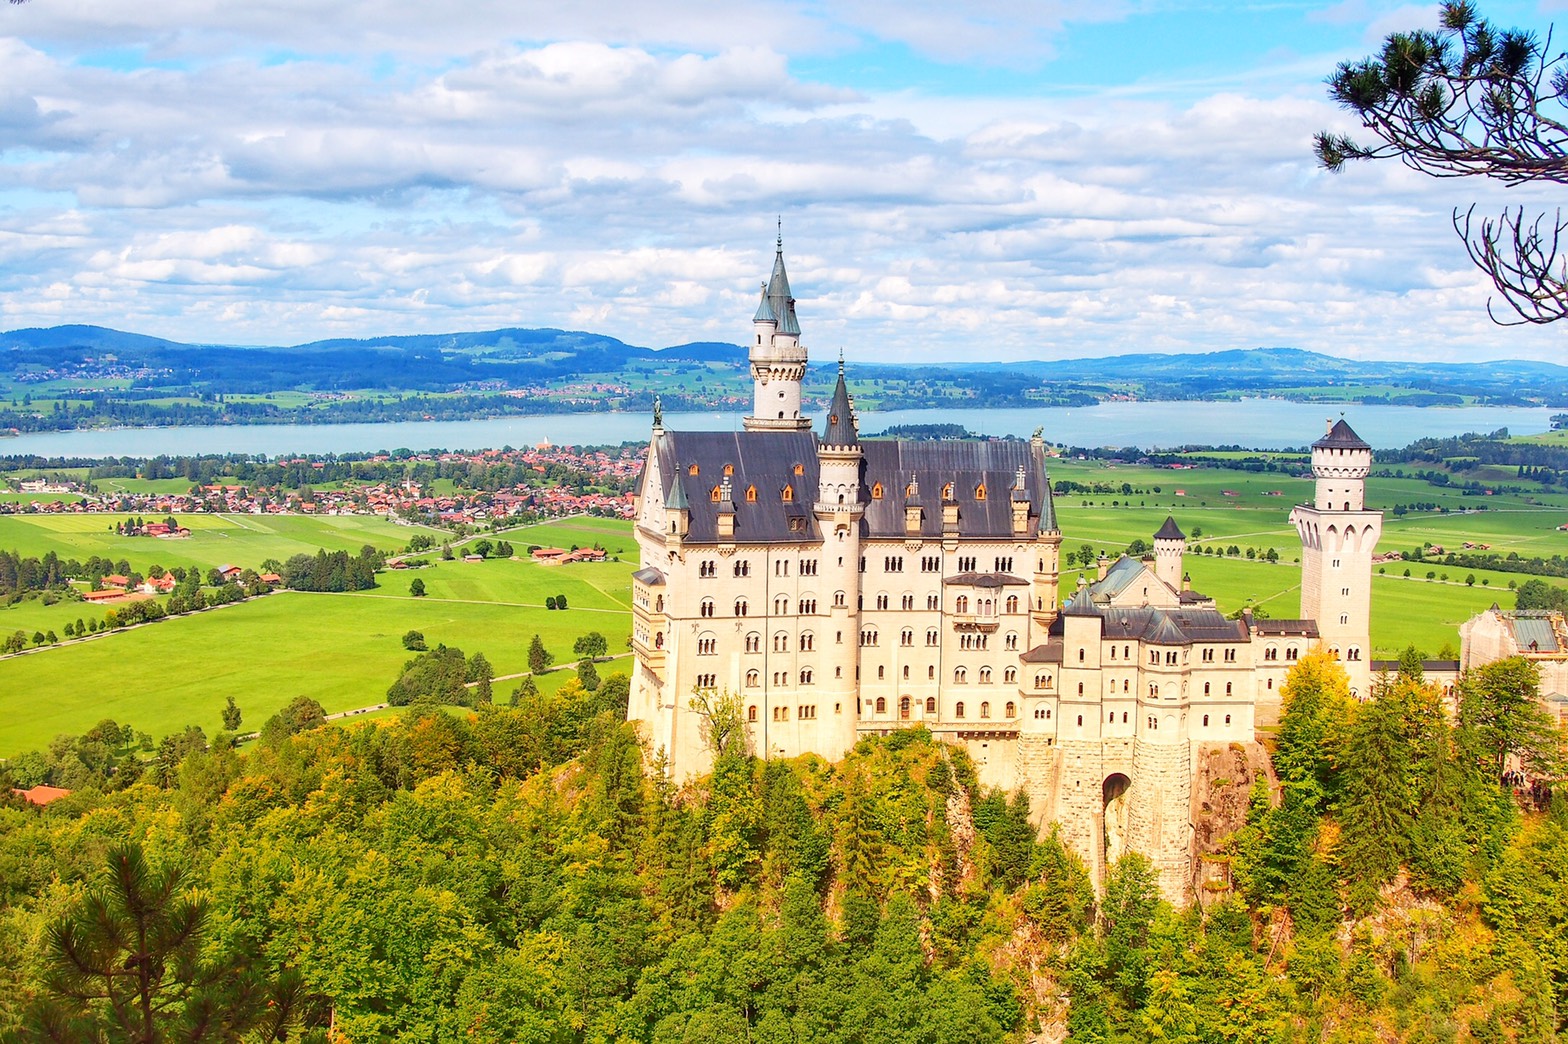 ドイツ シンデレラ城のモデルと言われている ノイシュヴァンシュタイン城